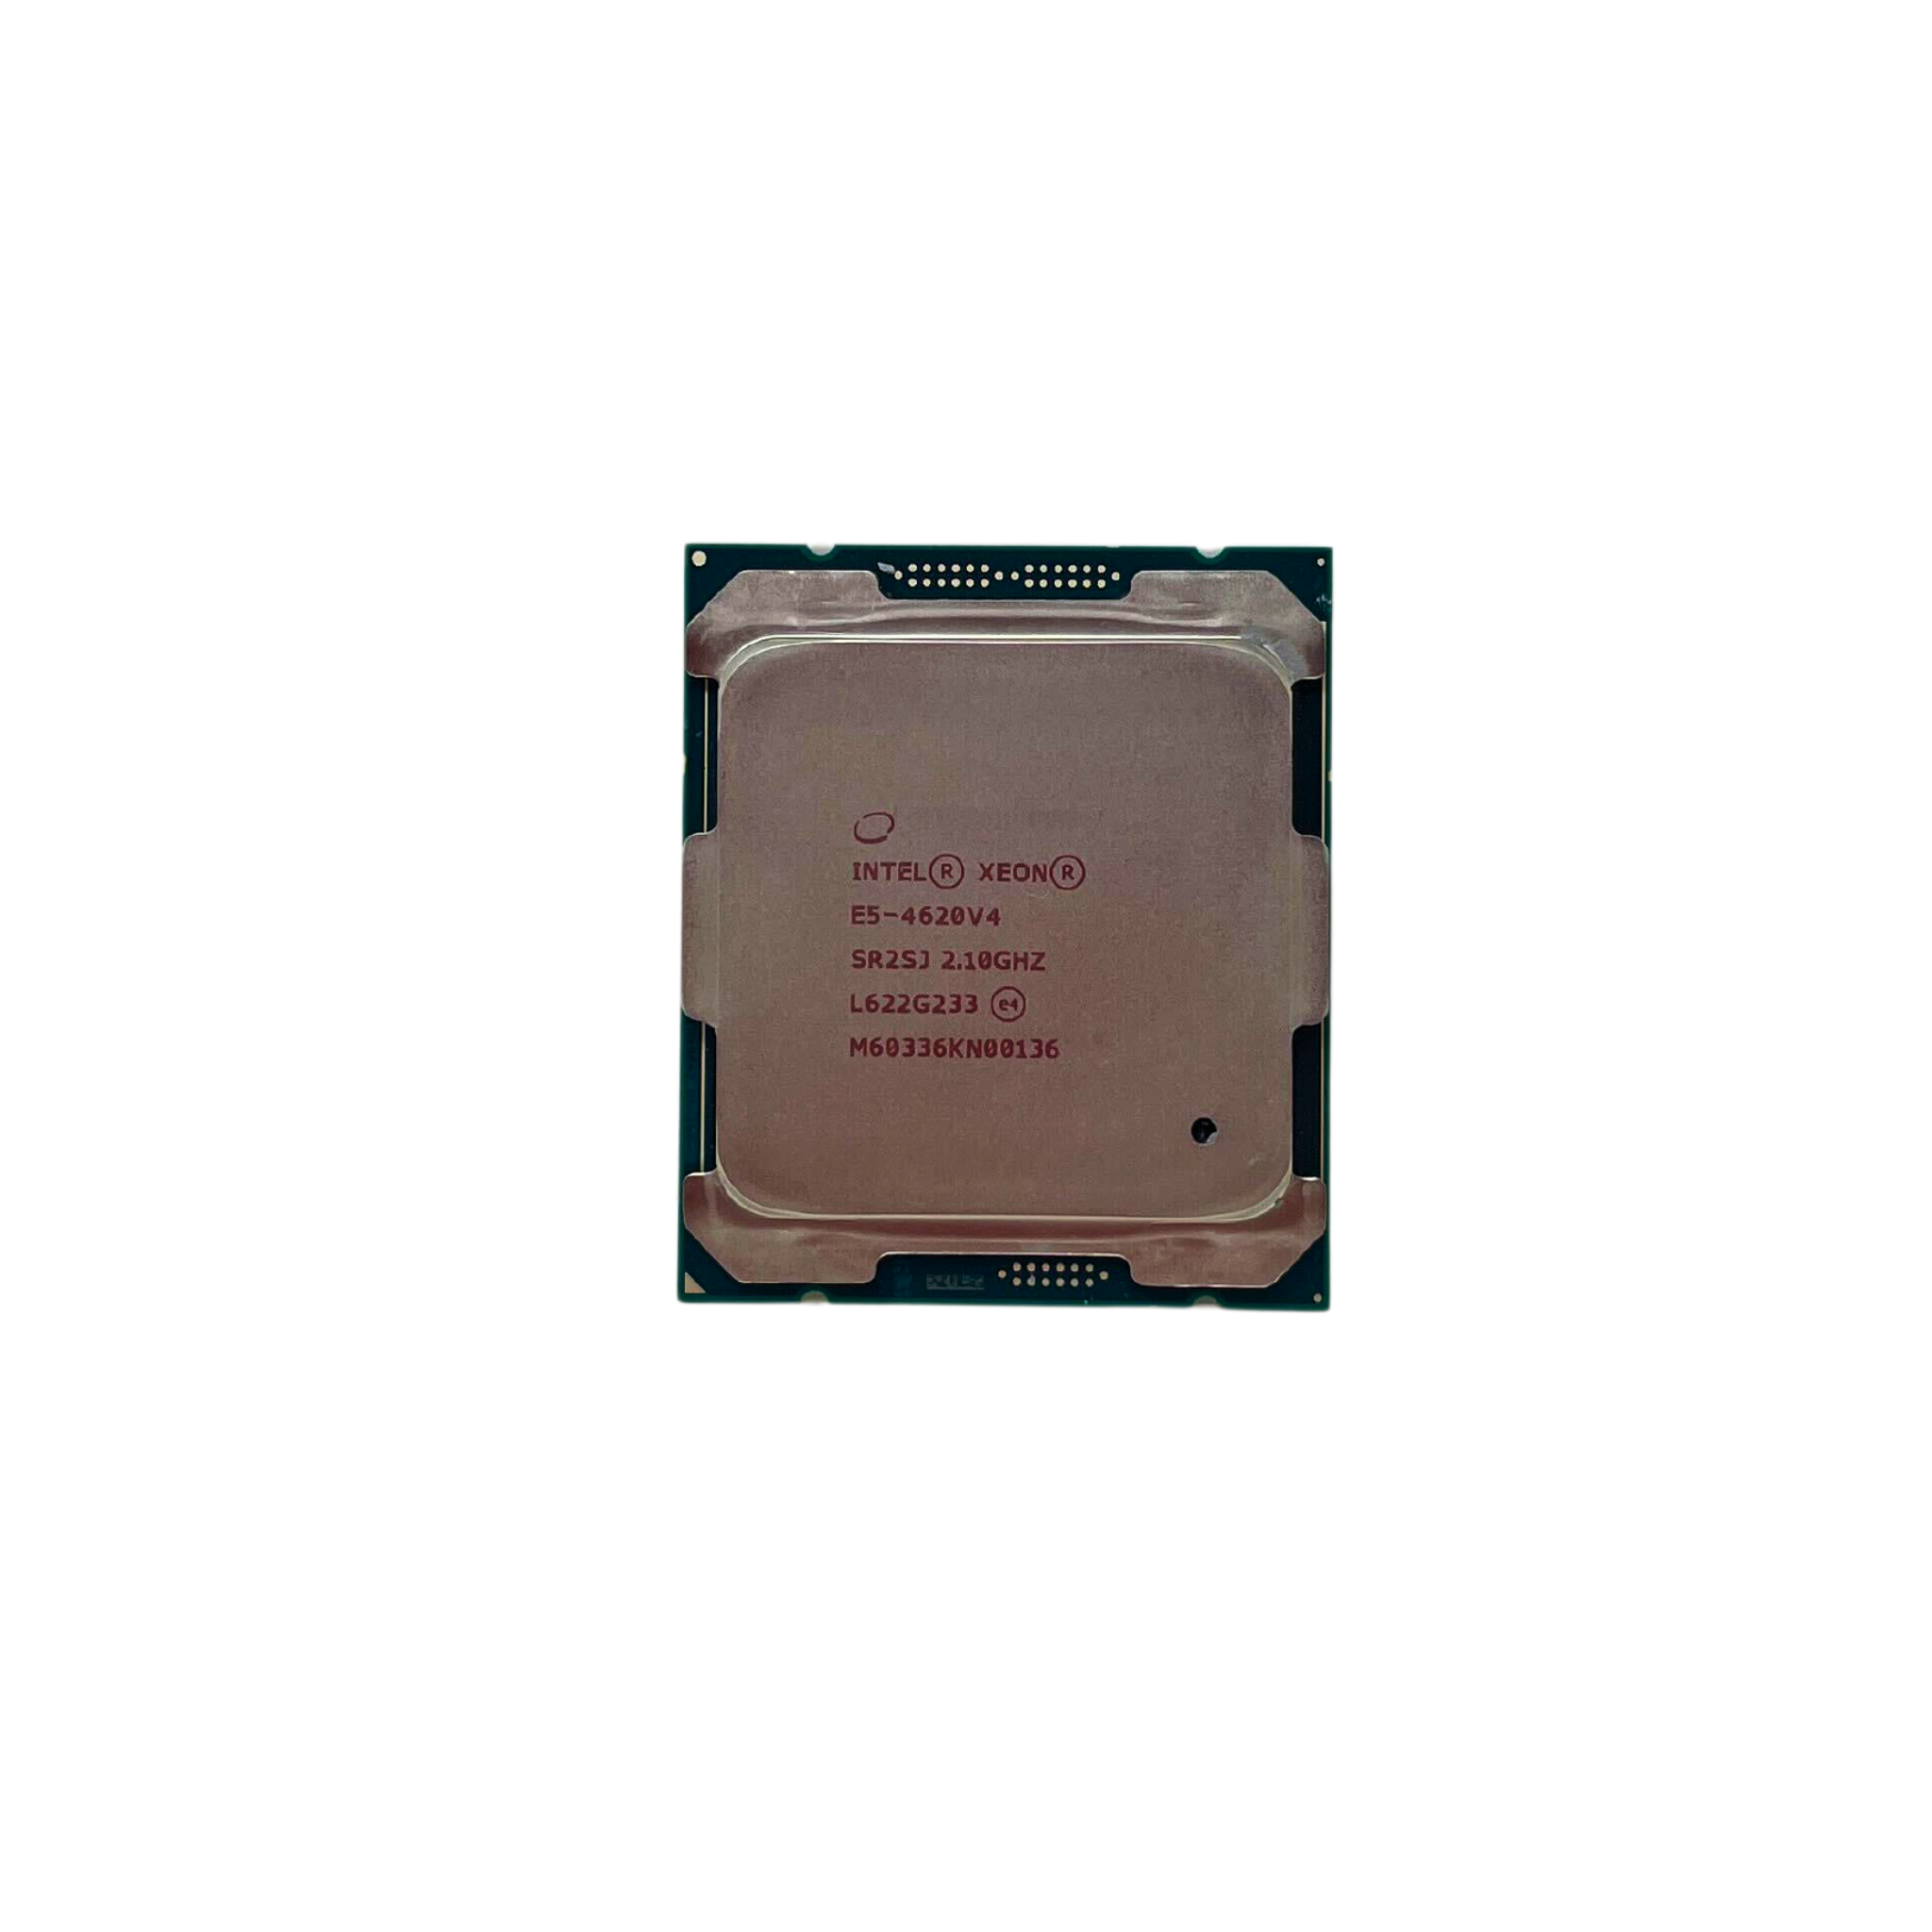  Intel Xeon E5-4620 V4  10-Core 2.10GHz FCLGA-2011-3 Processor (Intel E5-4620 V4)